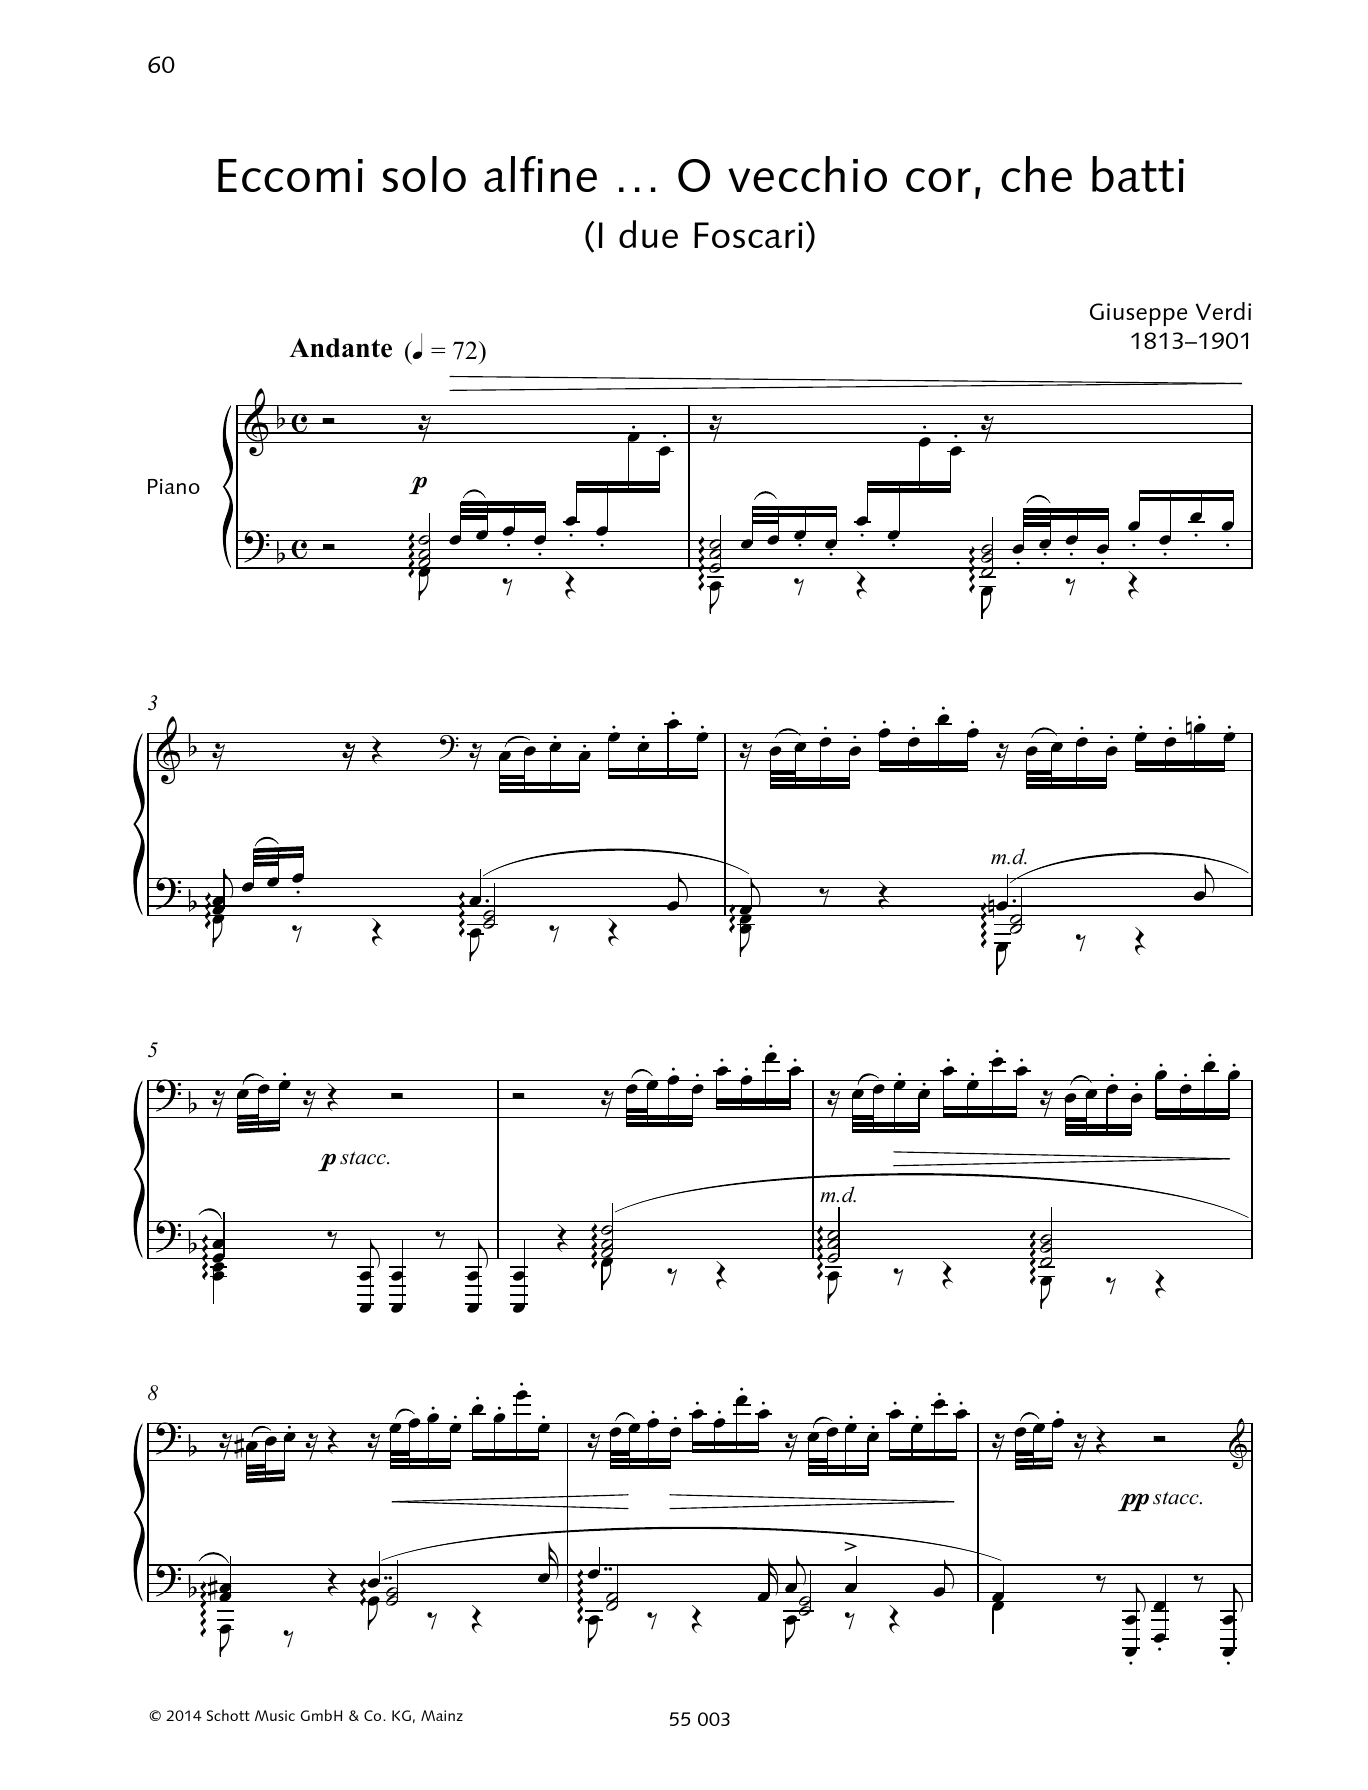 Giuseppe Verdi Eccomi solo alfine ... O vecchio cor, che batti Sheet Music Notes & Chords for Piano & Vocal - Download or Print PDF